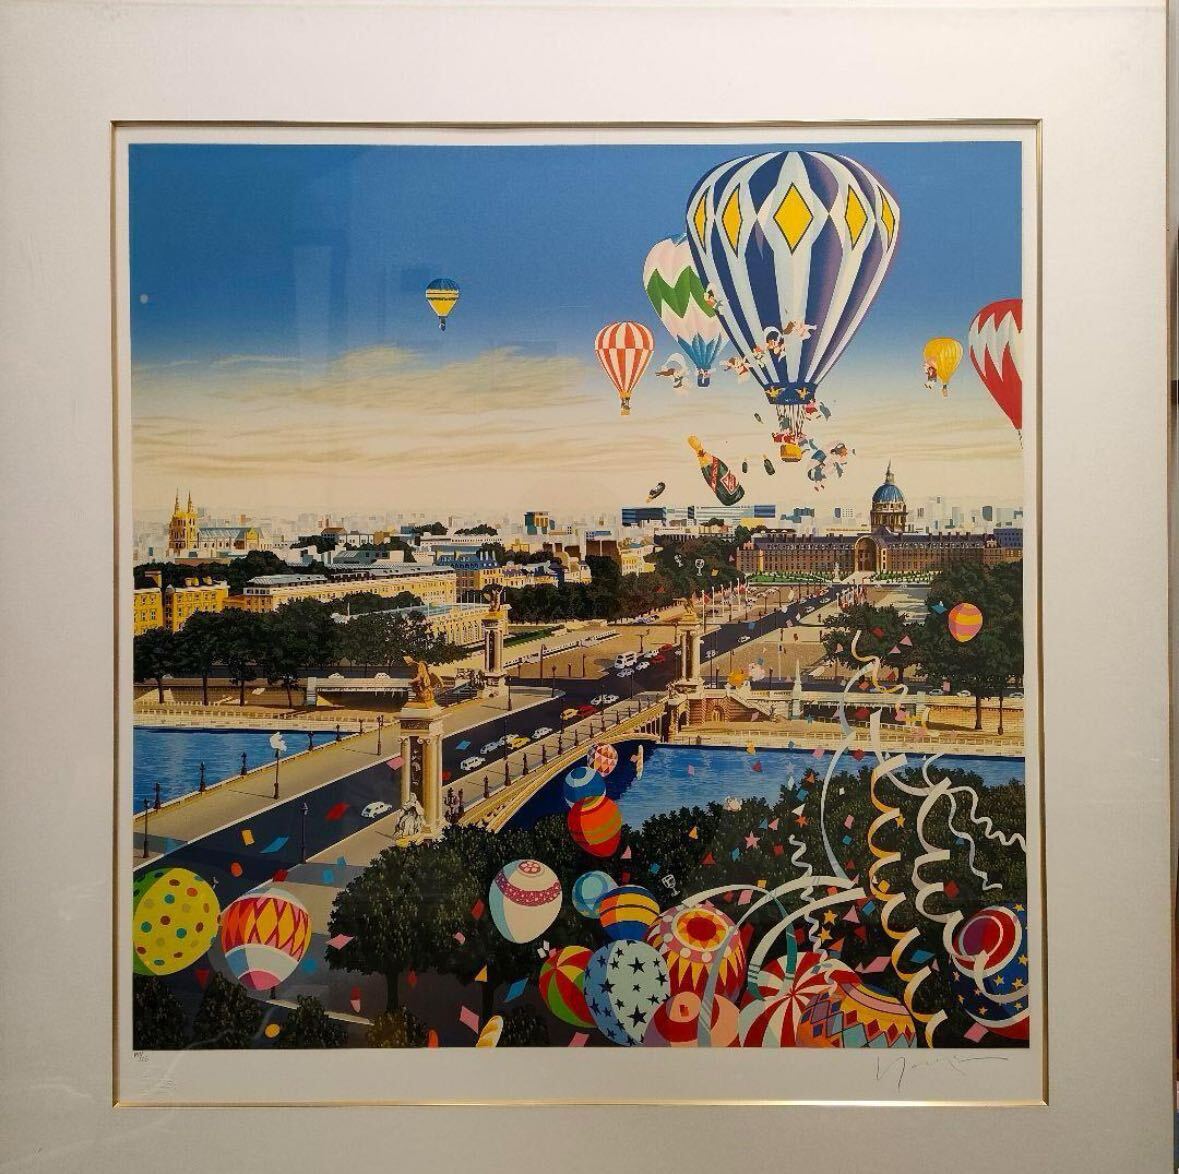 Hiro Yamagata Balloon Lace Sérigraphie Édition 1990 Autographiée, ouvrages d'art, peinture, autres